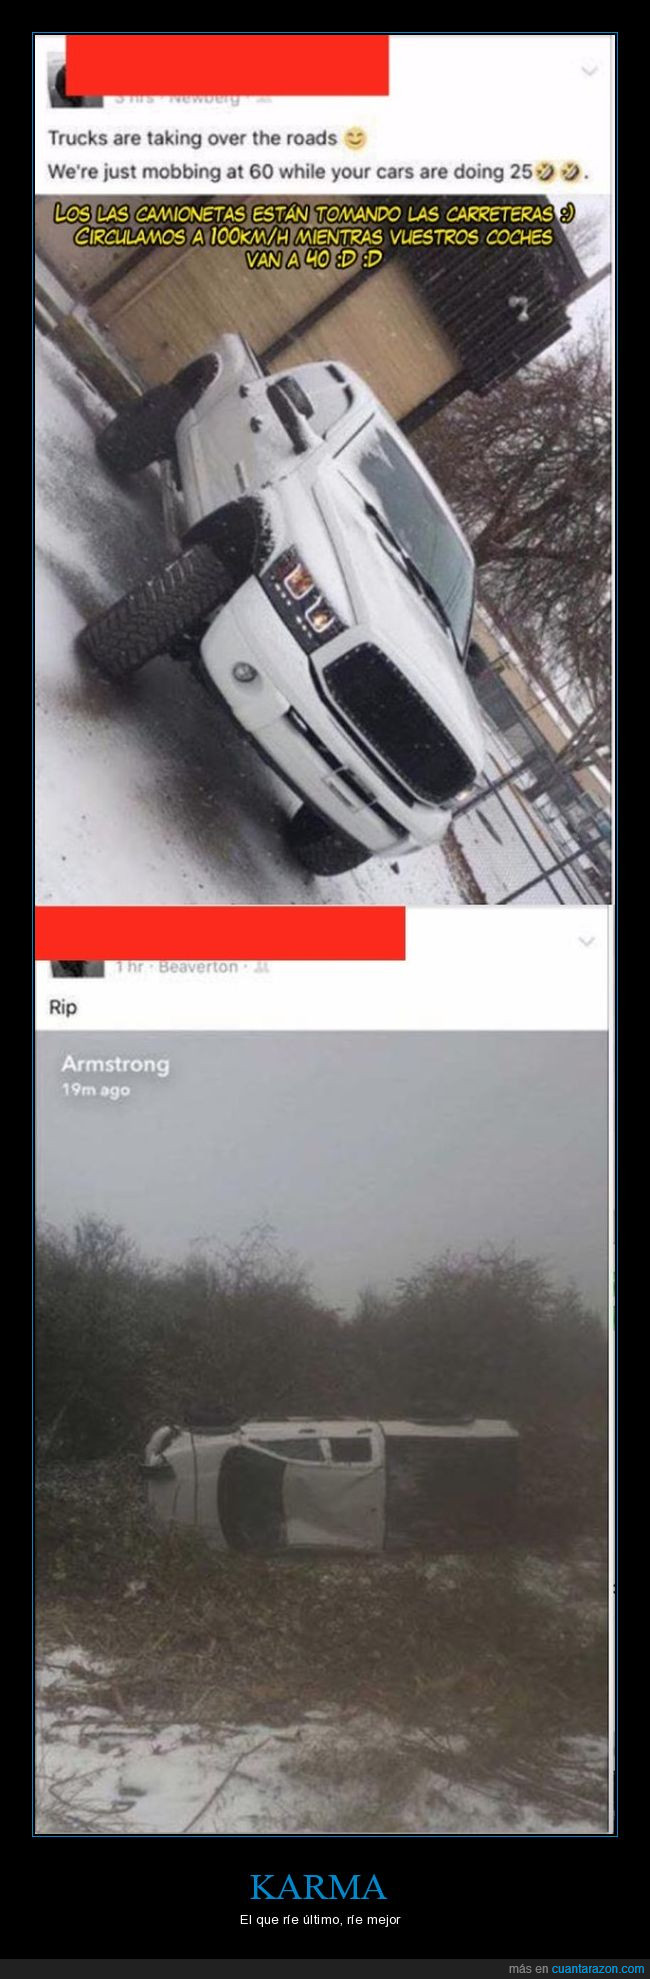 accidente,camioneta,nieve,tumbada